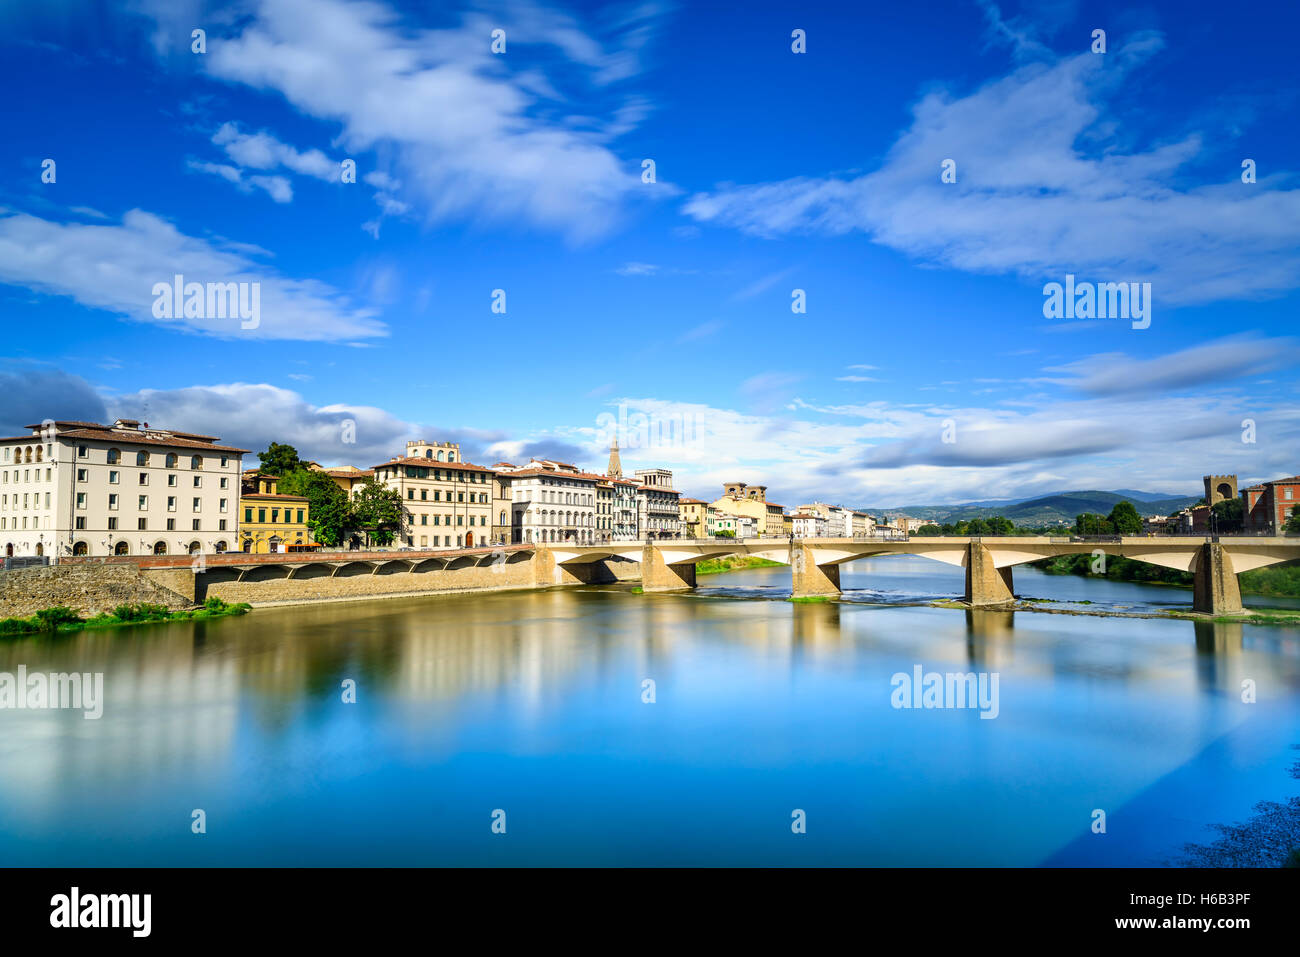 Florencia o Firenze, Ponte alle Grazie emblemático puente sobre el río Arno, puesta de sol paisaje con reflexión. Toscana, Italia. Larga exp Foto de stock